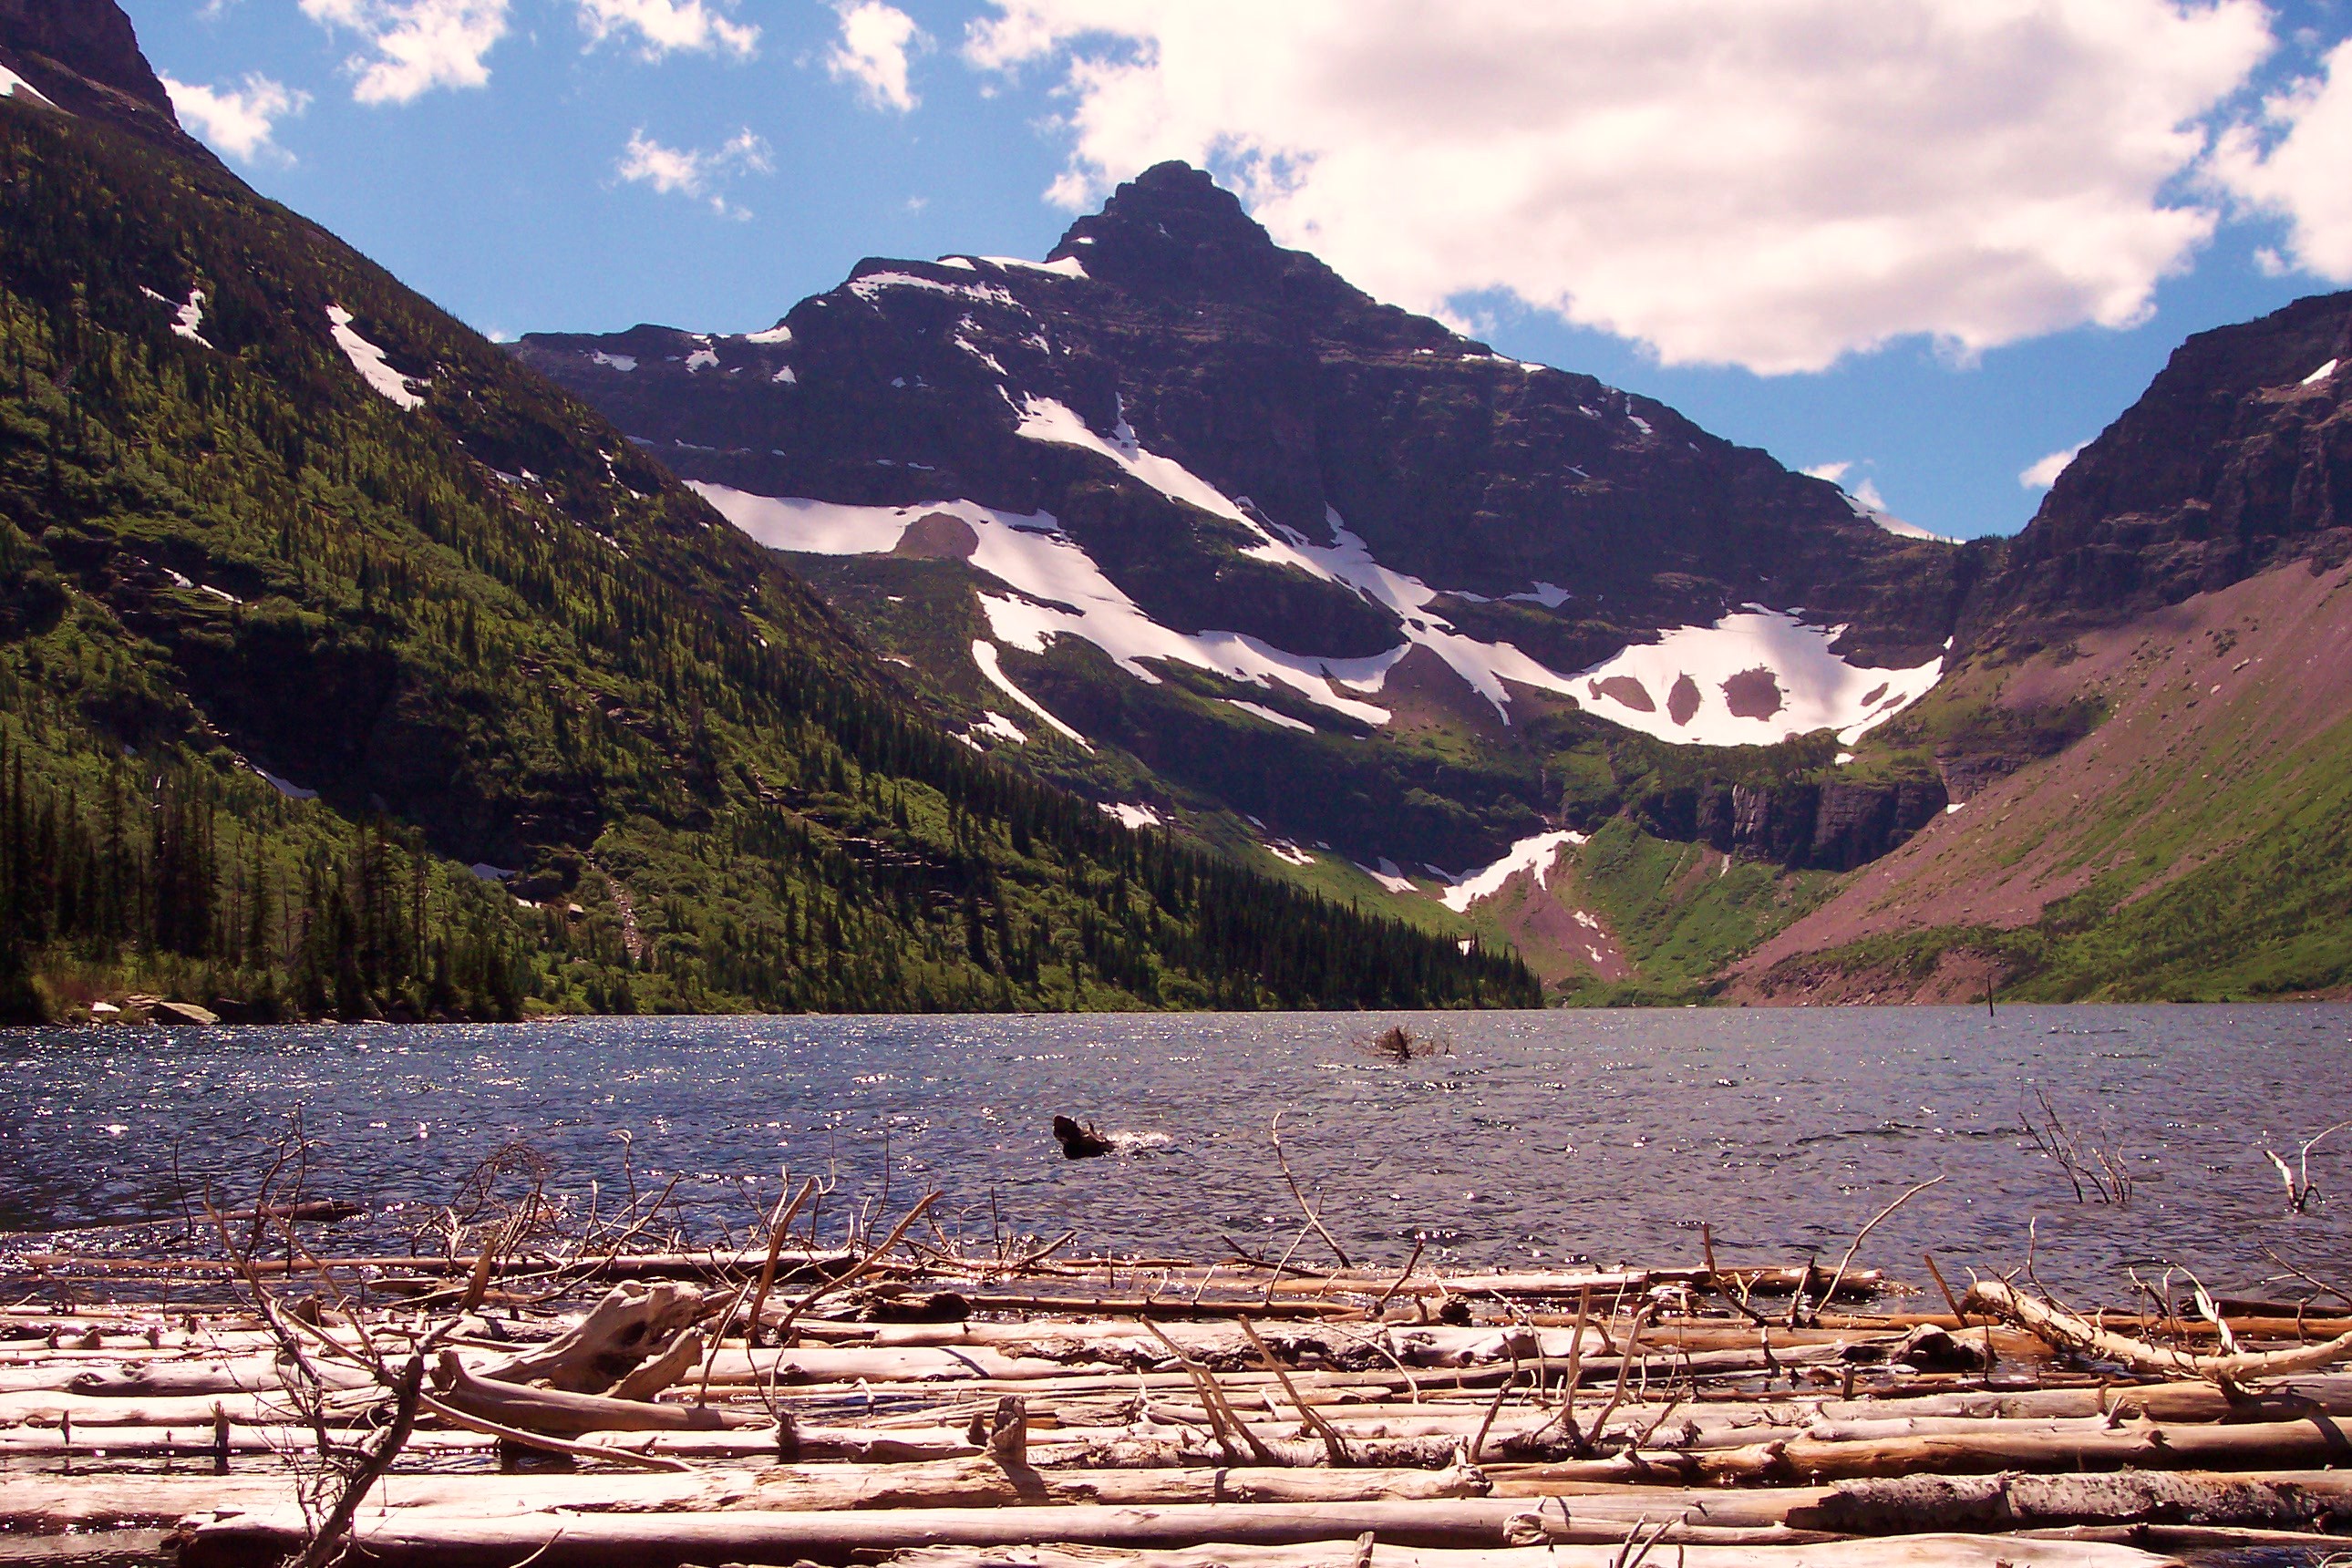 Hồ Medicine tồn tại trong Vườn quốc gia Jasper của Canada. Vào mùa đông, nước hồ hoàn toàn biến mất do nguồn cung nước cho hồ bị đóng băng trong khi những vết nứt dưới đáy hút cạn nước của hồ. Nước hồ tái xuất vào mùa xuân và hè, khi những sông băng tan chảy.